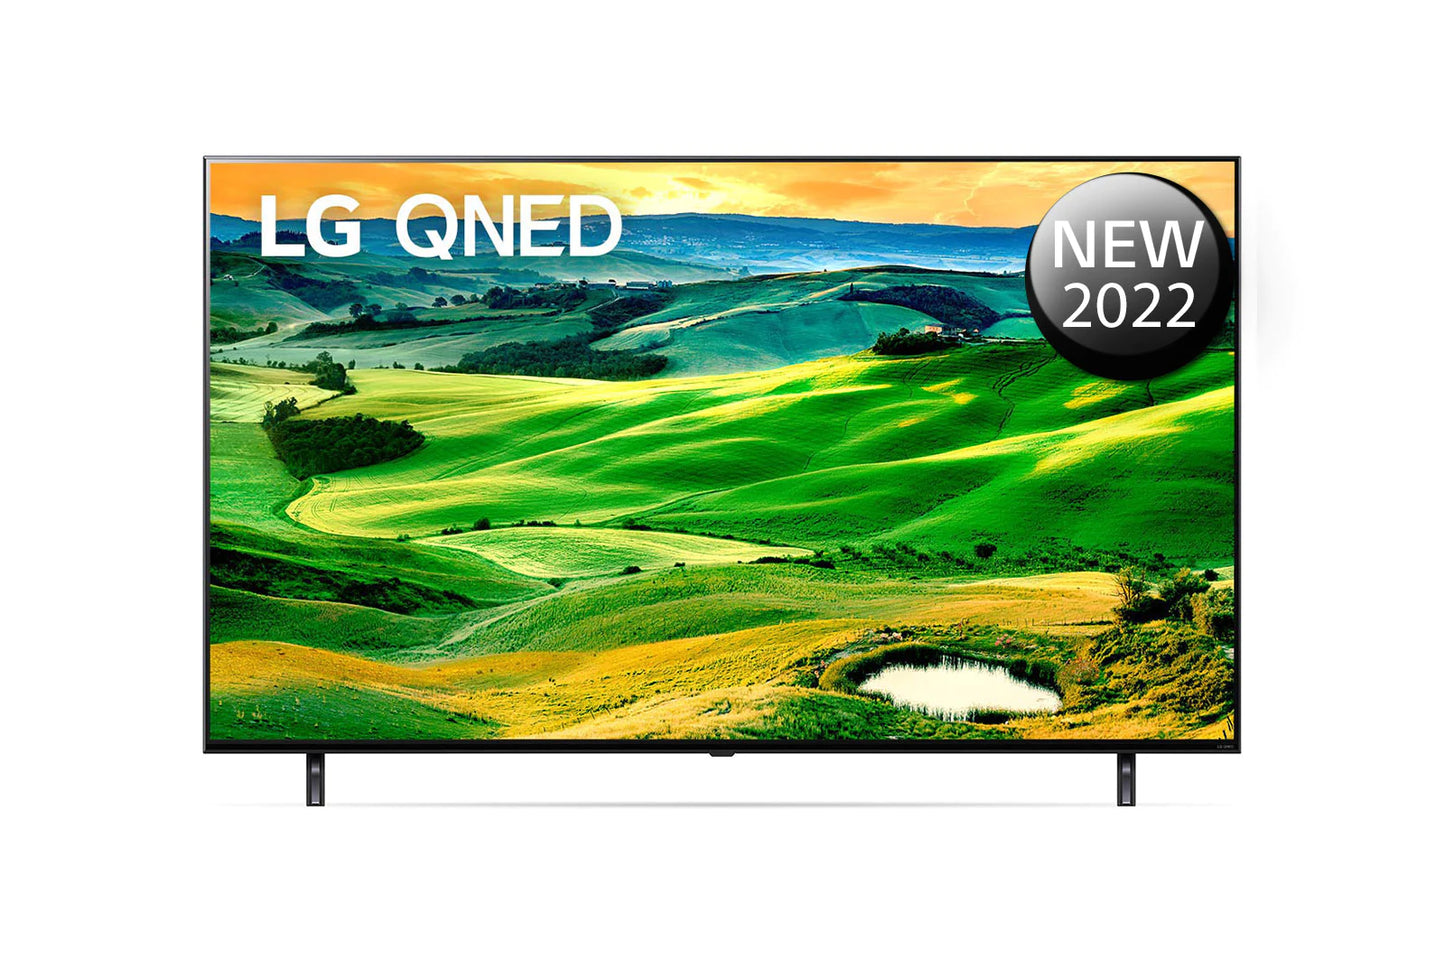 LG 55" QUANTUM DOT + NANO CELL + MINI LED 4K SMART TV   55 QNED816RA